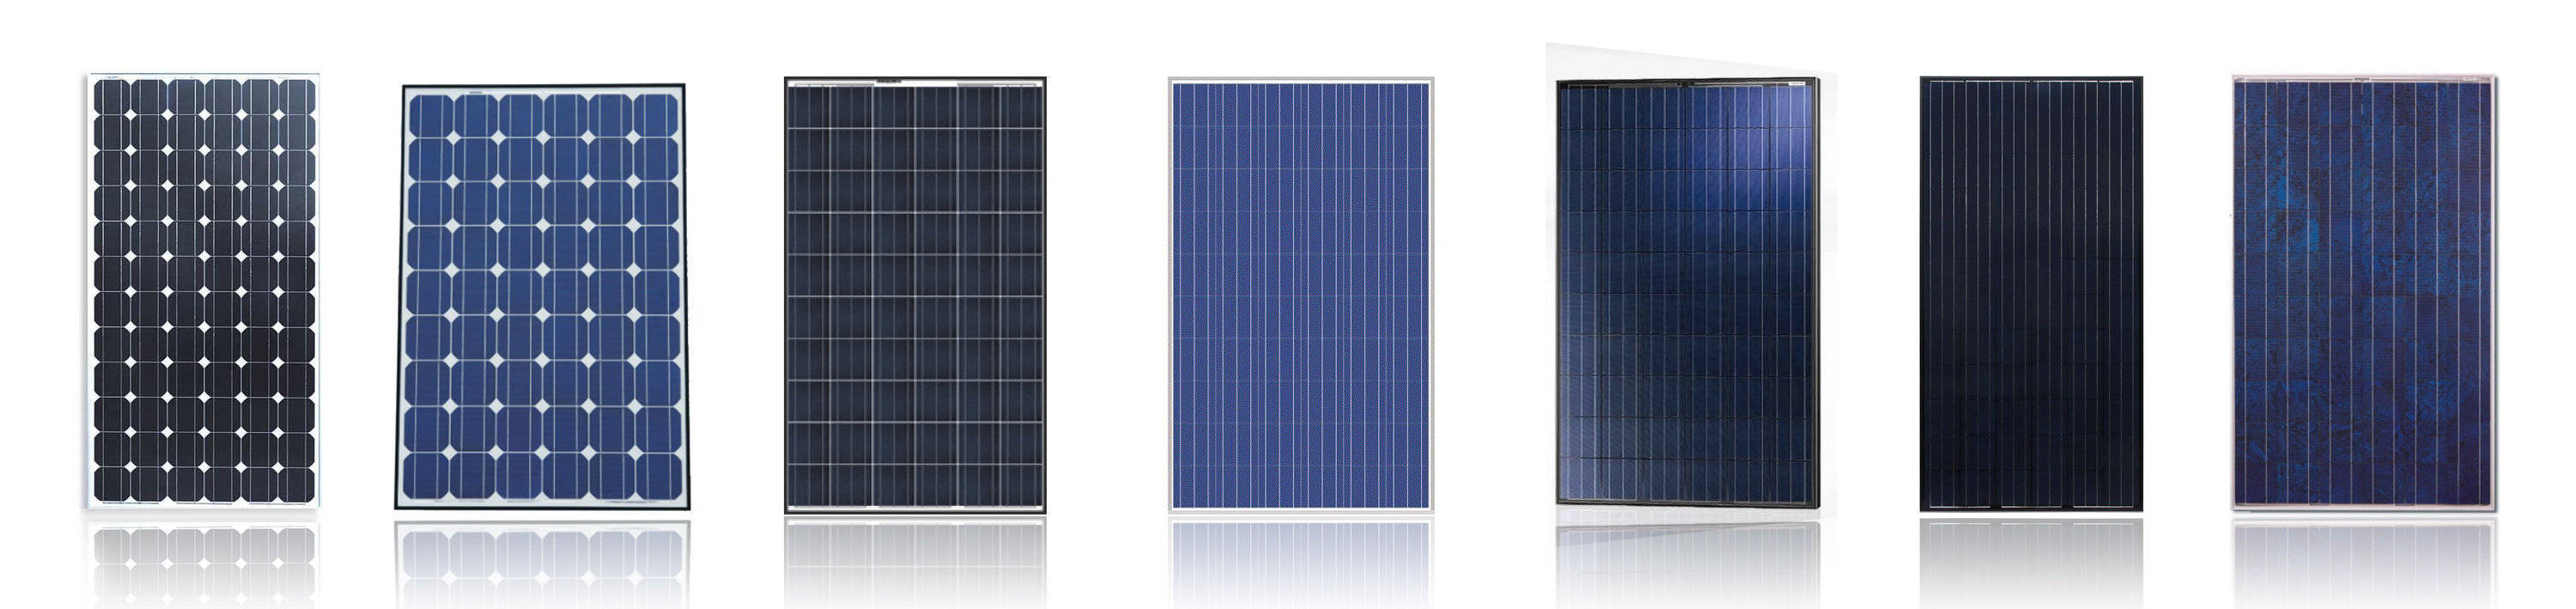 高效价格实惠的单晶太阳能电池片